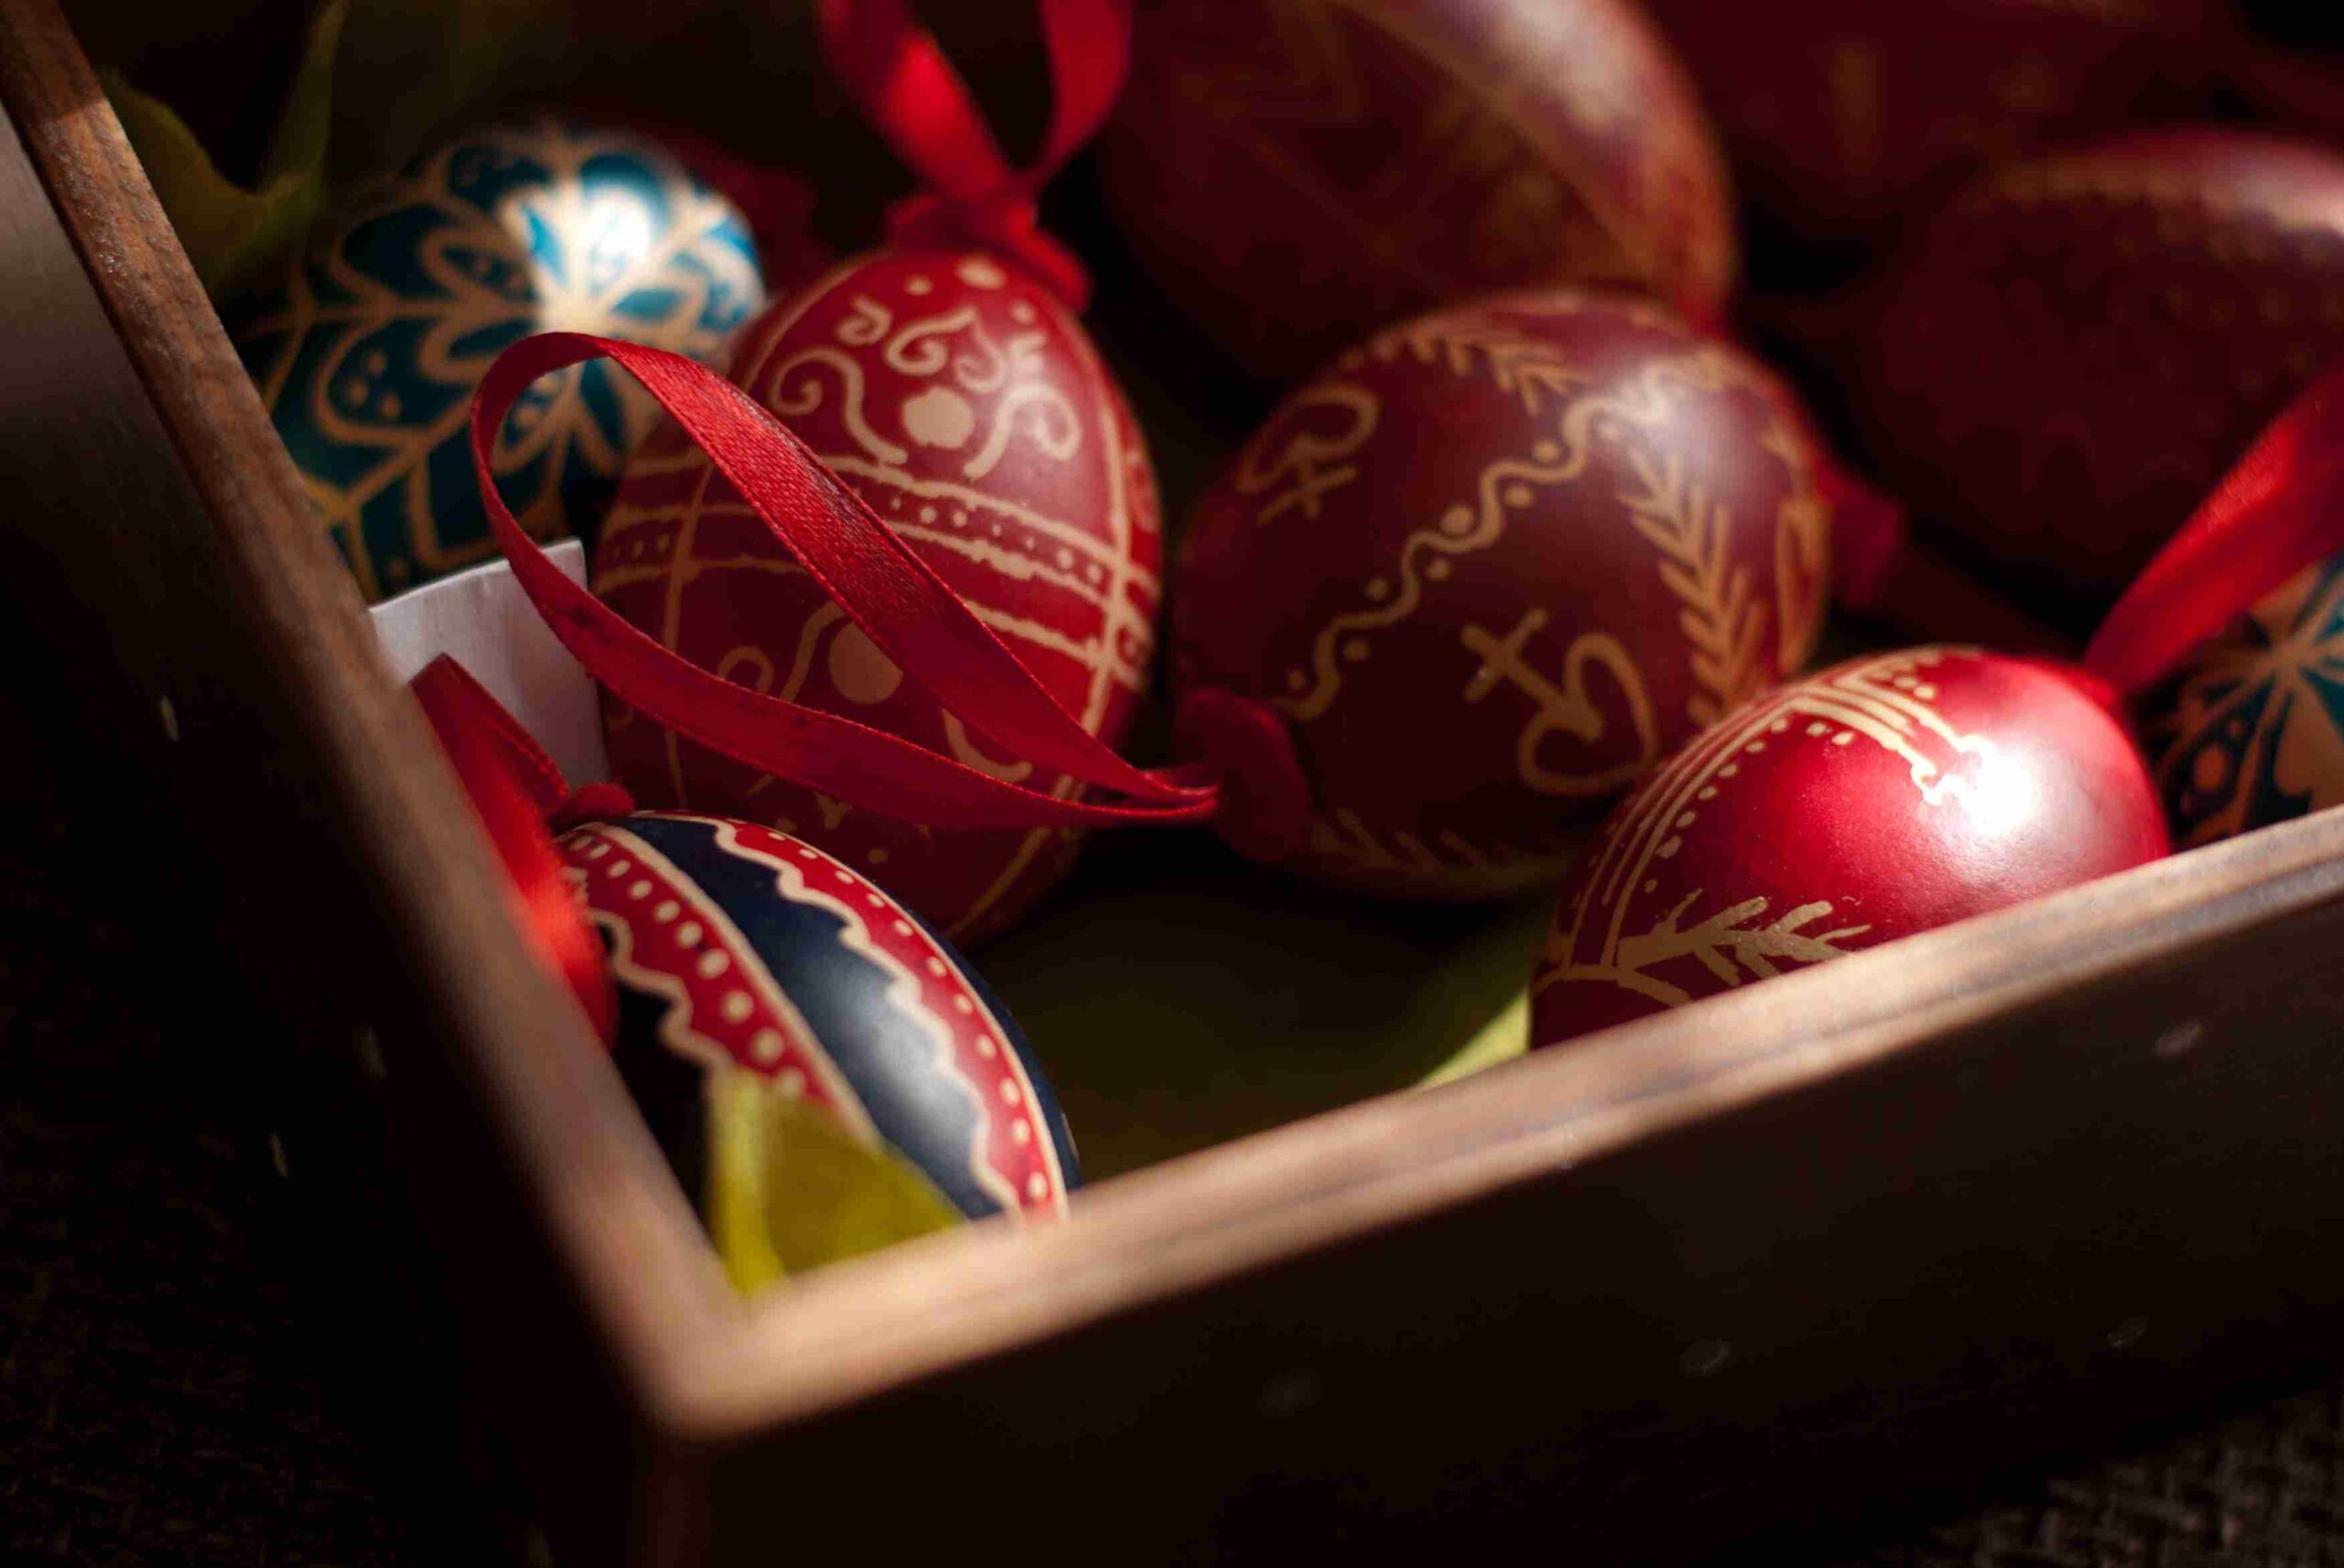 Uskršnja crvena jaja/ Easter eggs